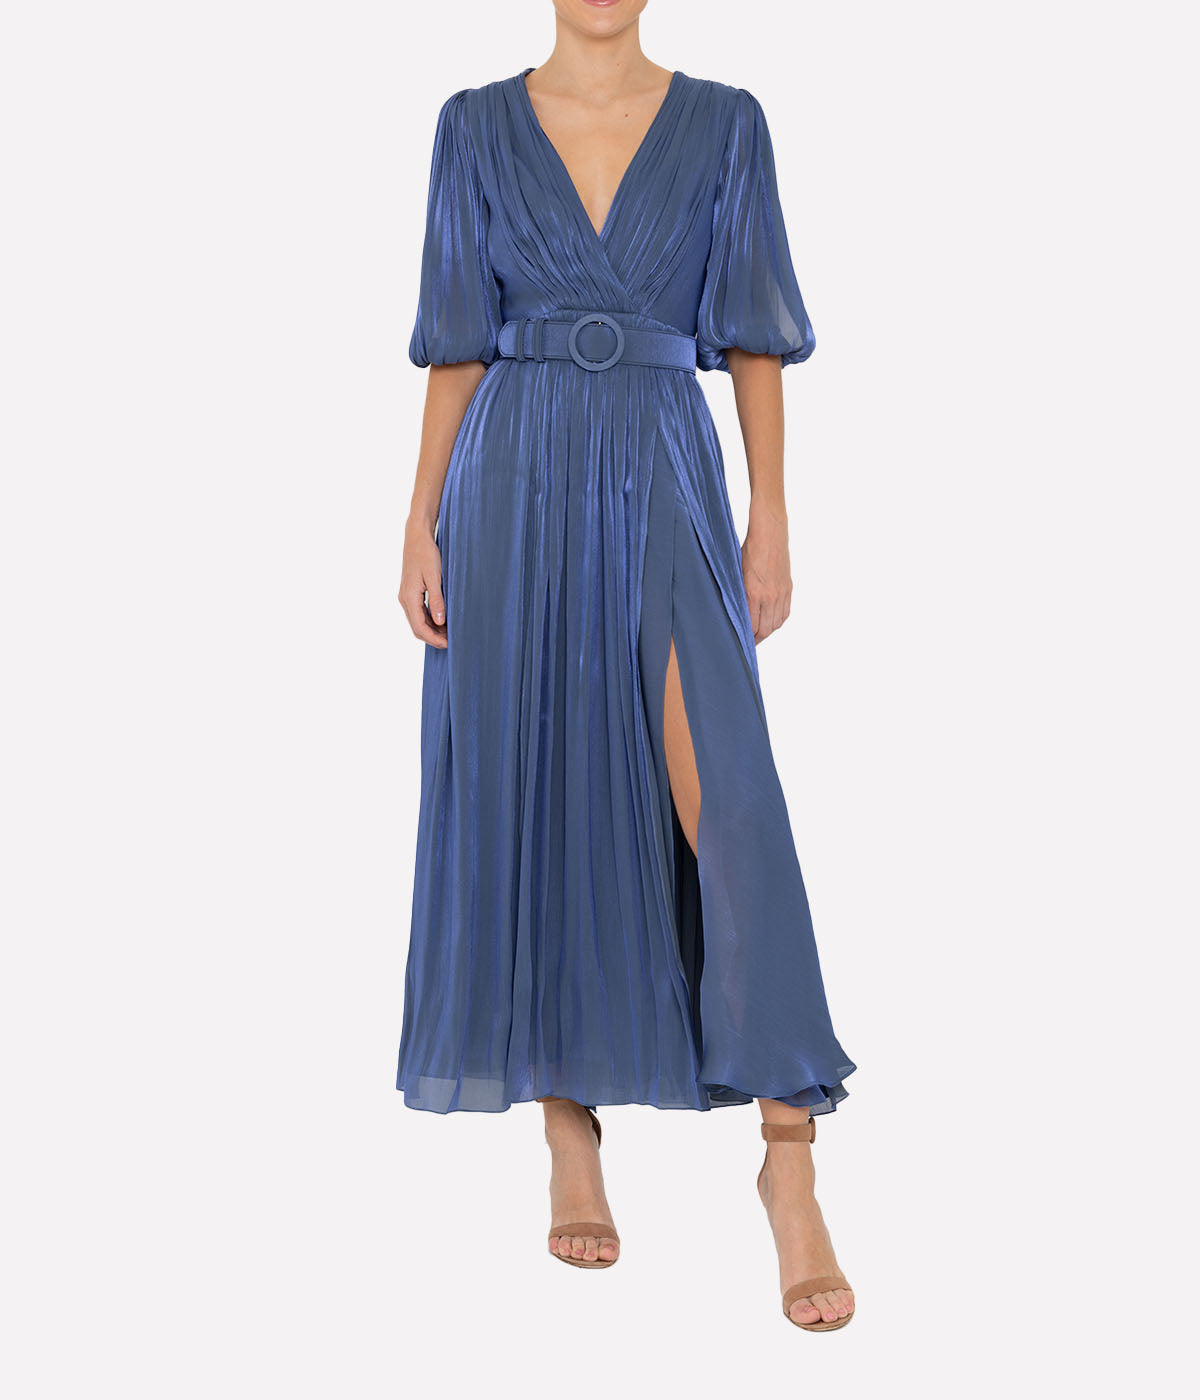 Brennie Dress in Cobalt Blue